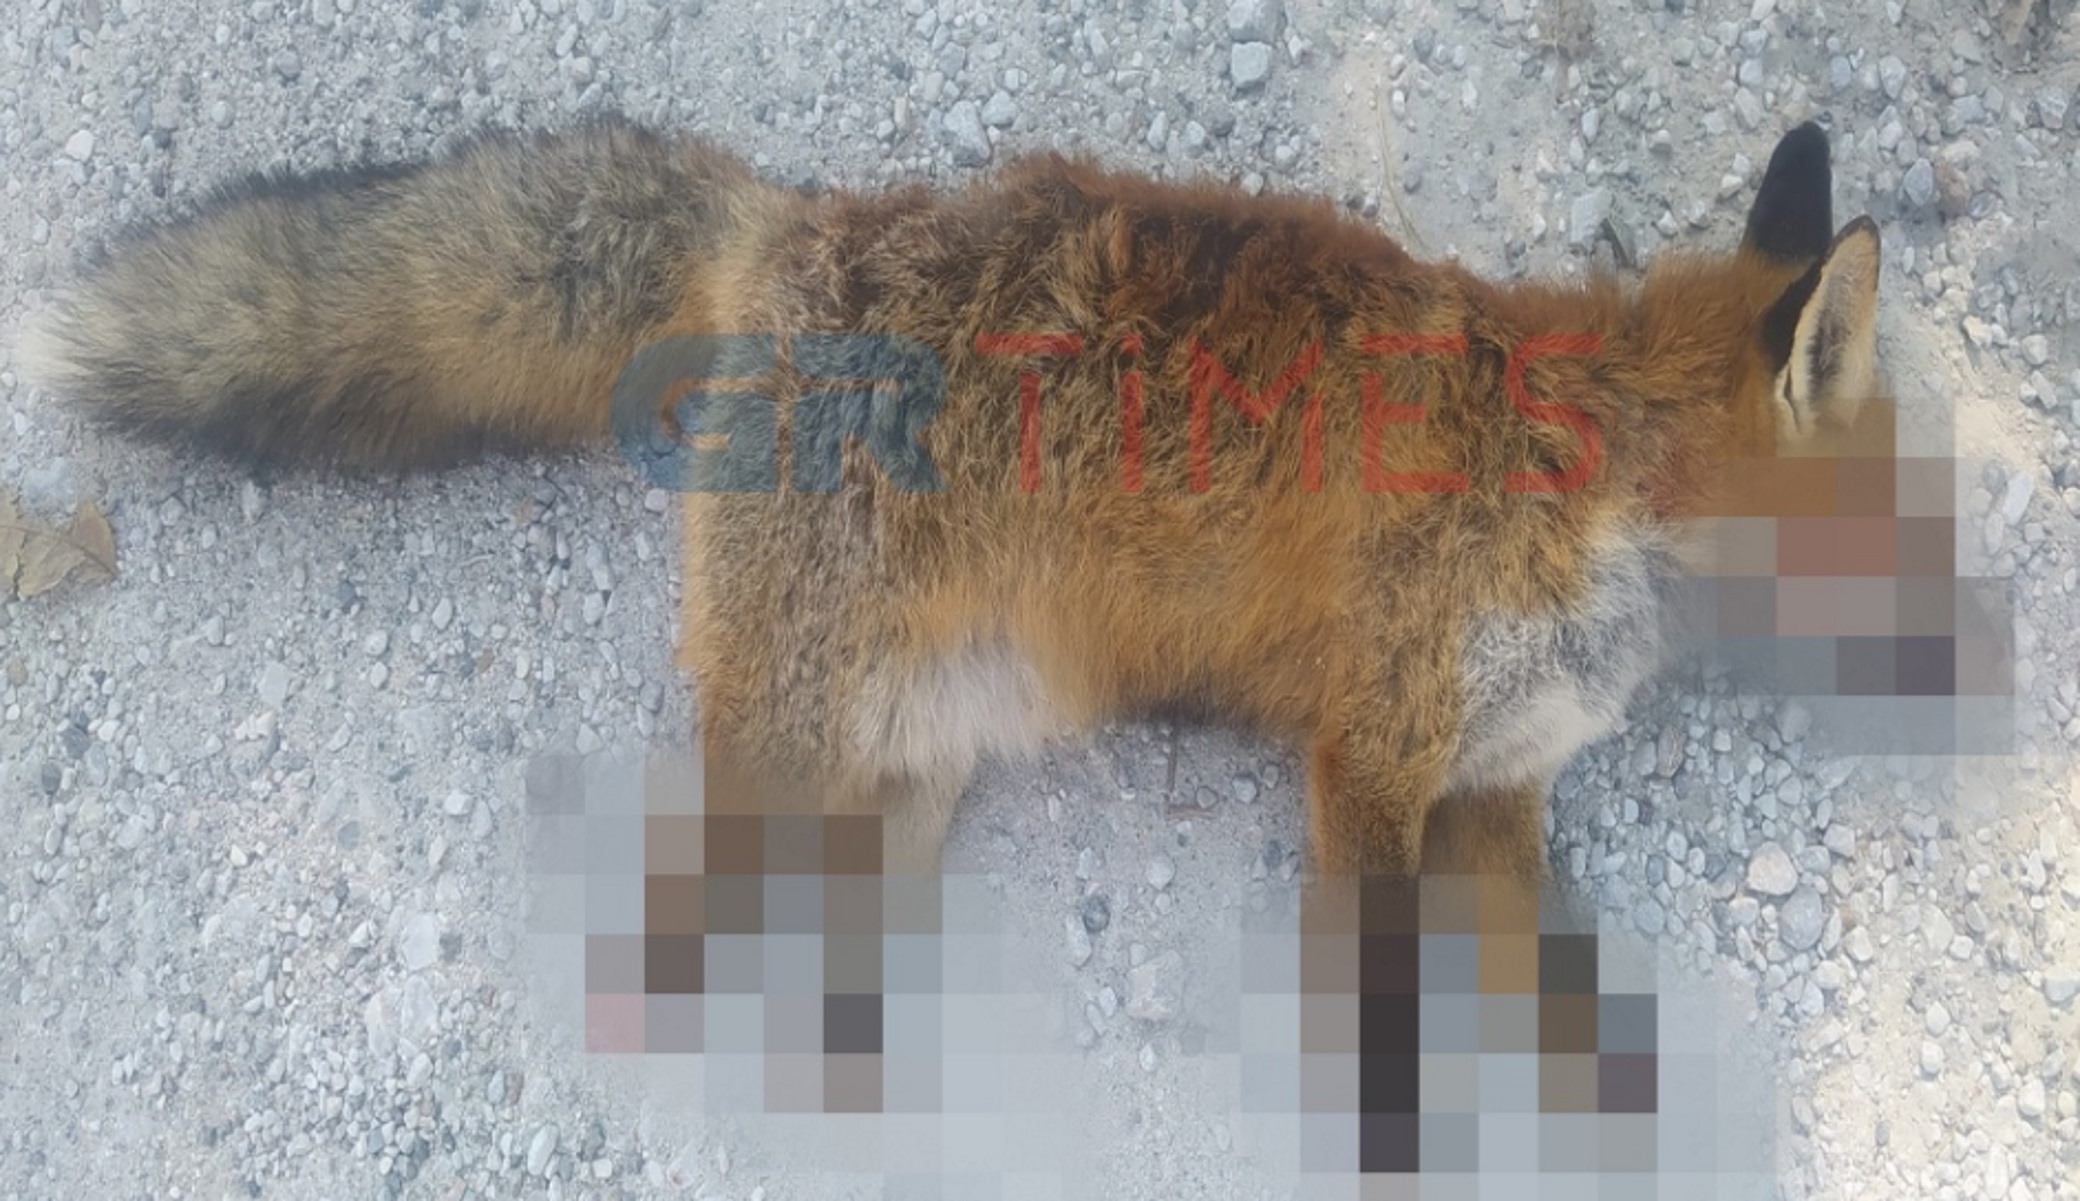 Φρίκη στην Καστοριά: Βασάνισαν αλεπού κόβοντας τα πόδια – To ζώο πέθανε από αιμορραγία